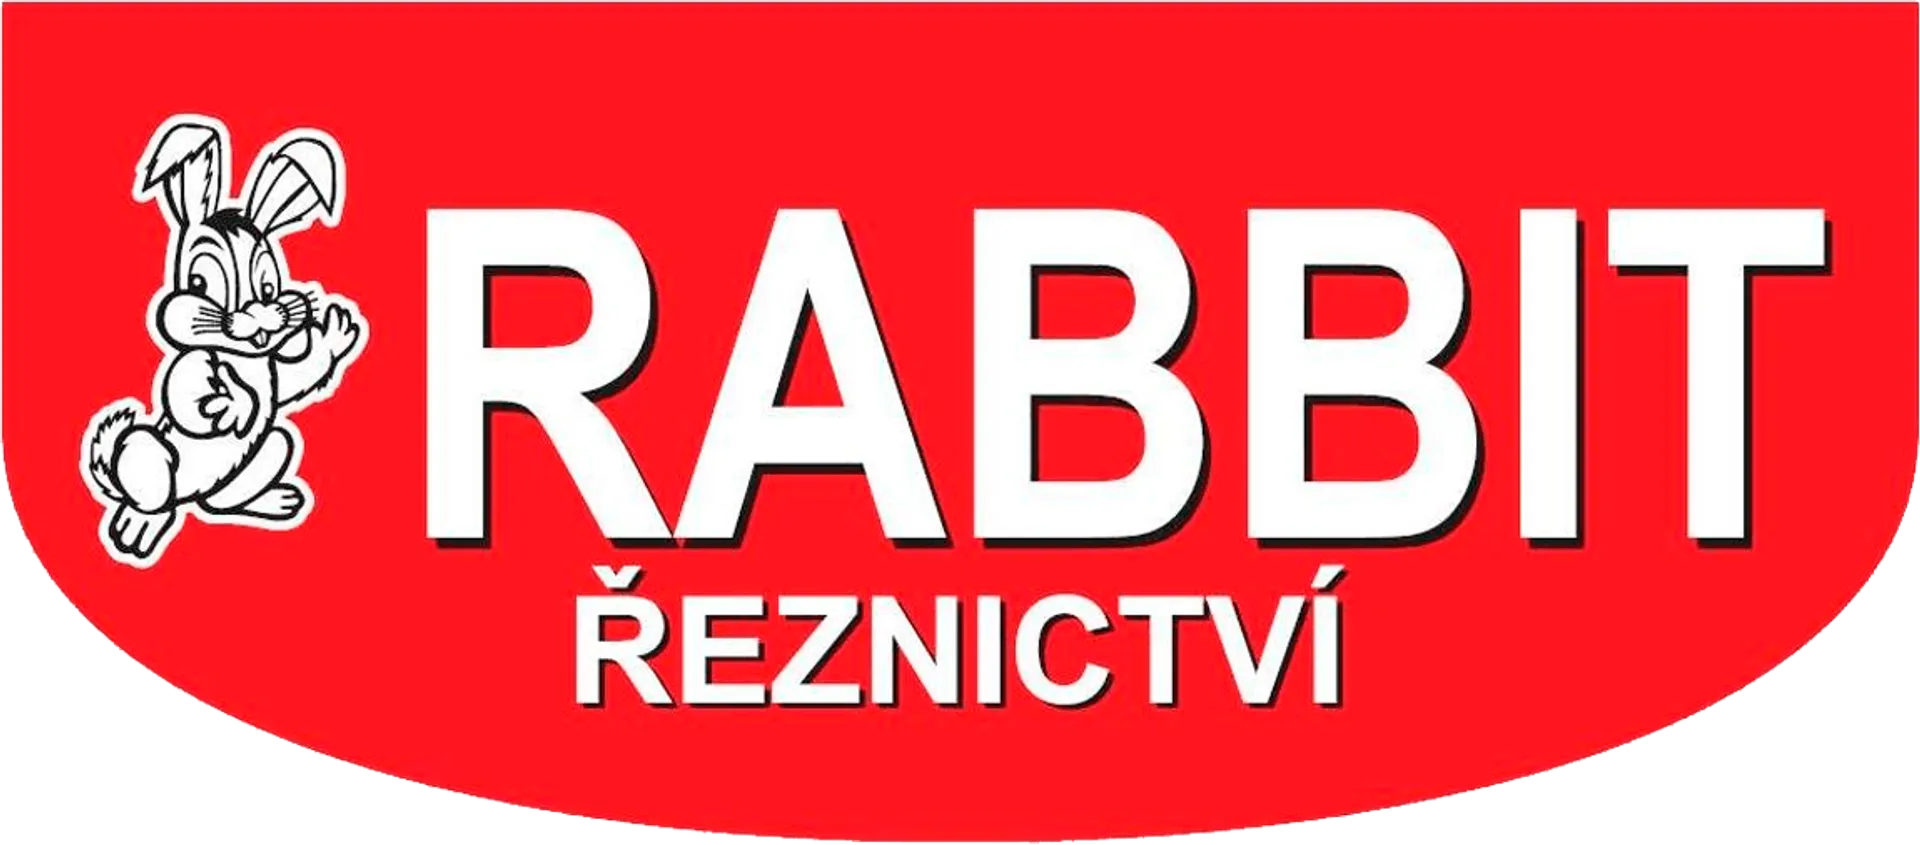 RABBIT ŘEZNICTVÍ logo of current flyer